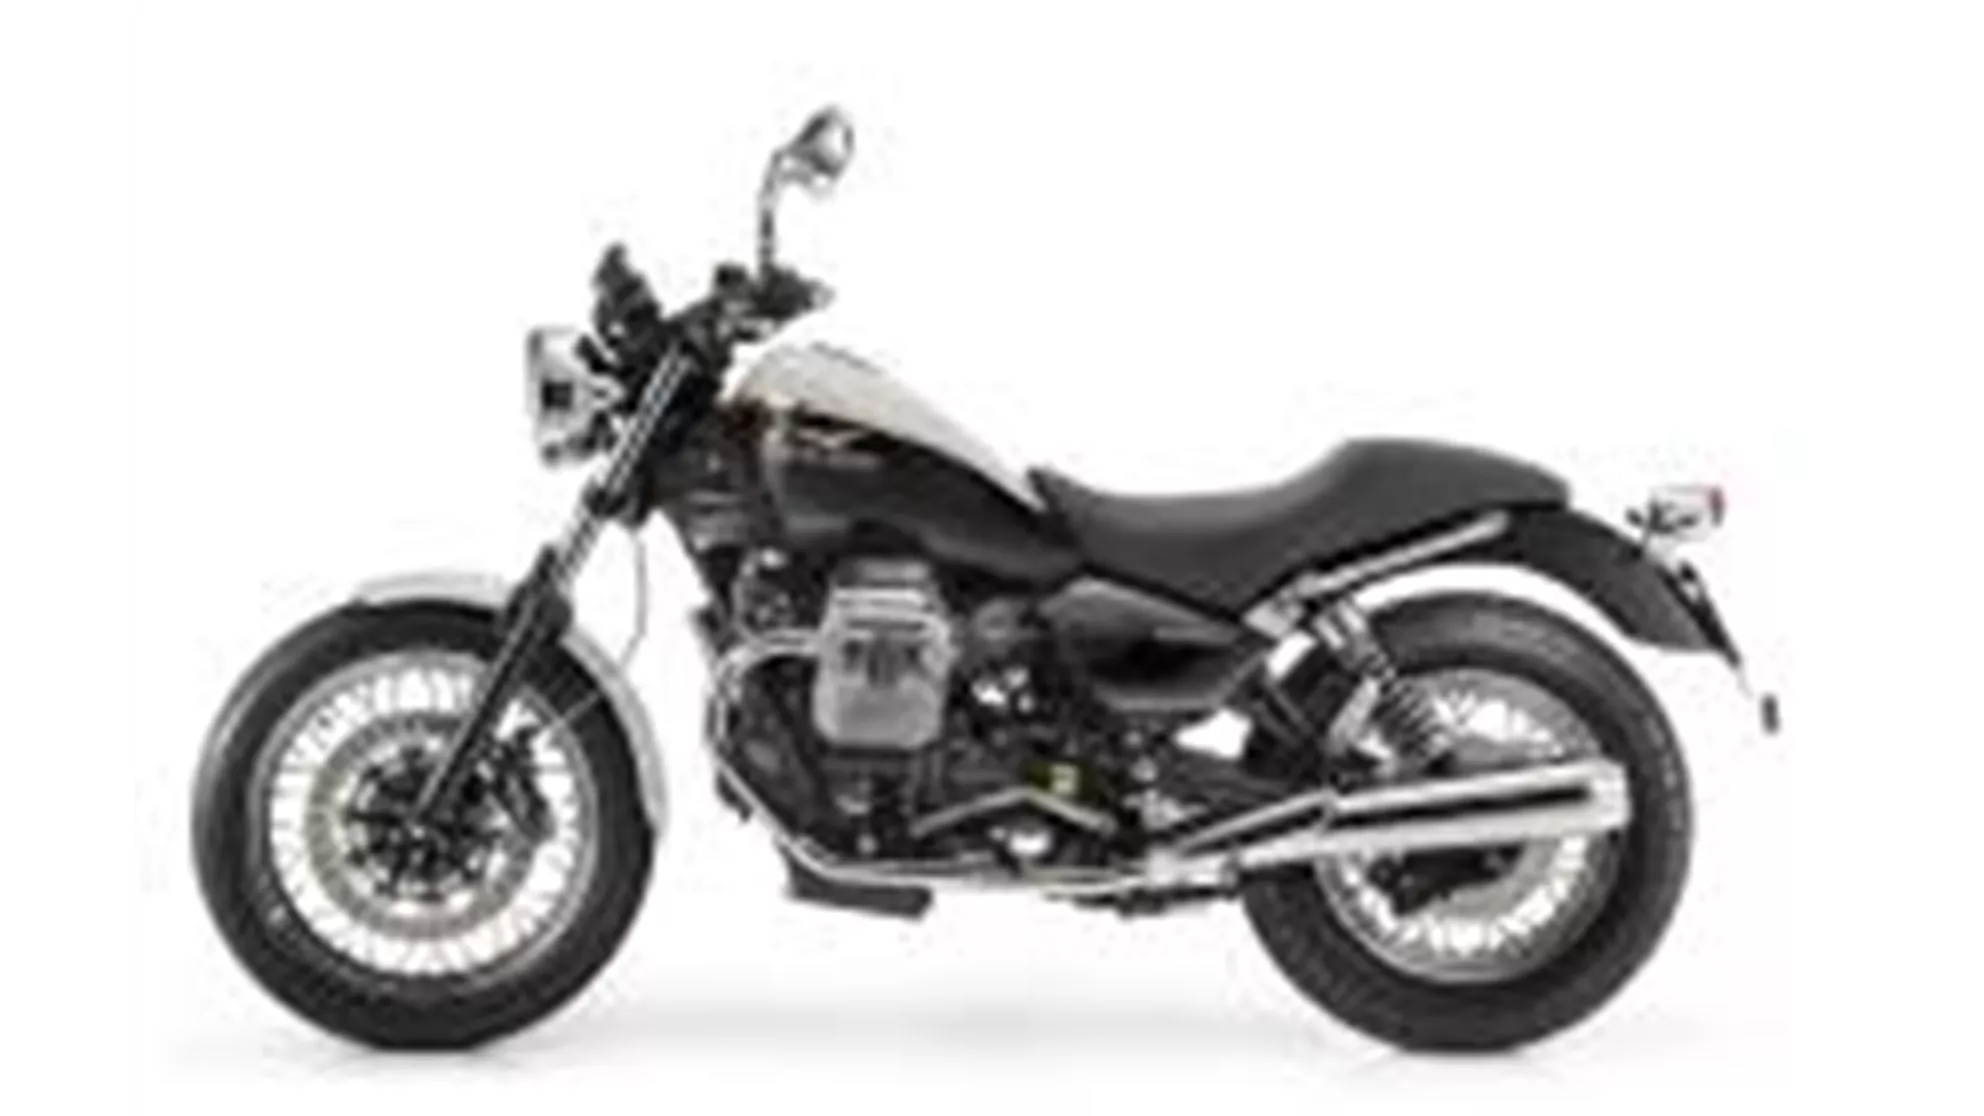 Moto Guzzi Nevada 750 Anniversario - Image 1